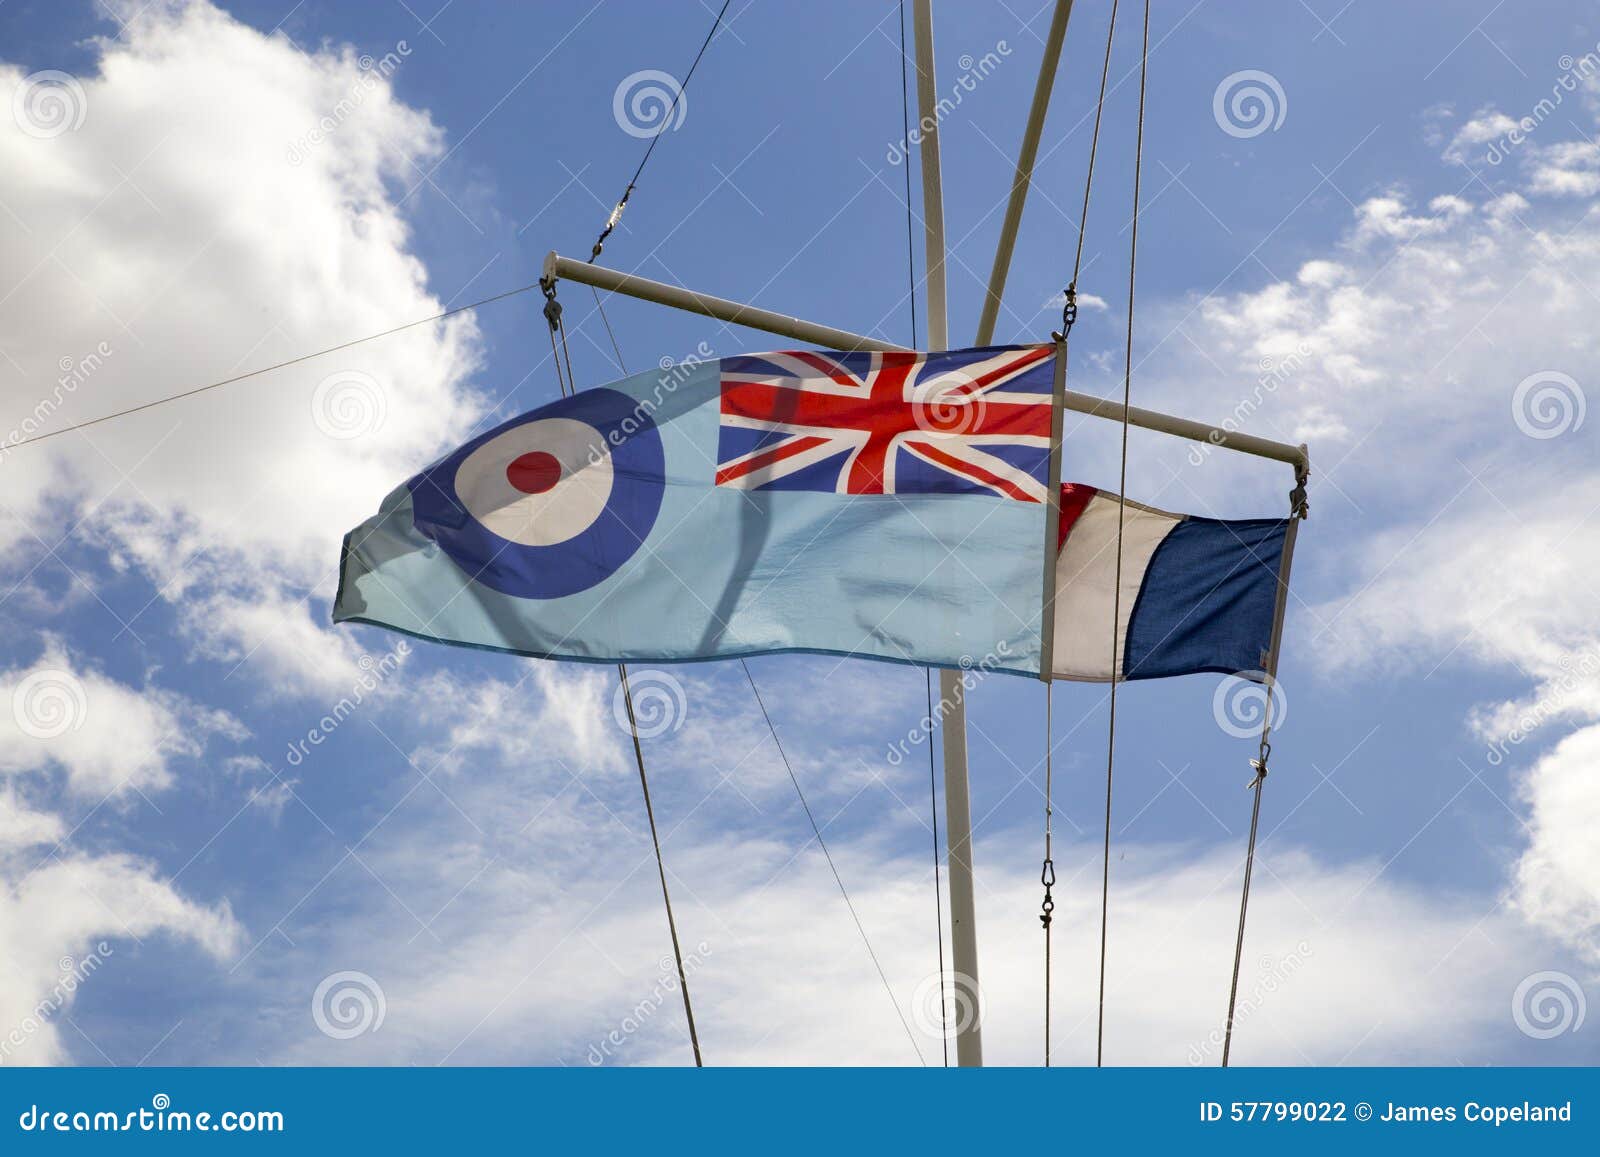 Australia RAF Ensign Flag 3 x 5 Banner 3x5 ft Drapeau Australie Royal Air Force Ensign AZ FLAG Australian Royal Air Force Flags 90 x 150 cm